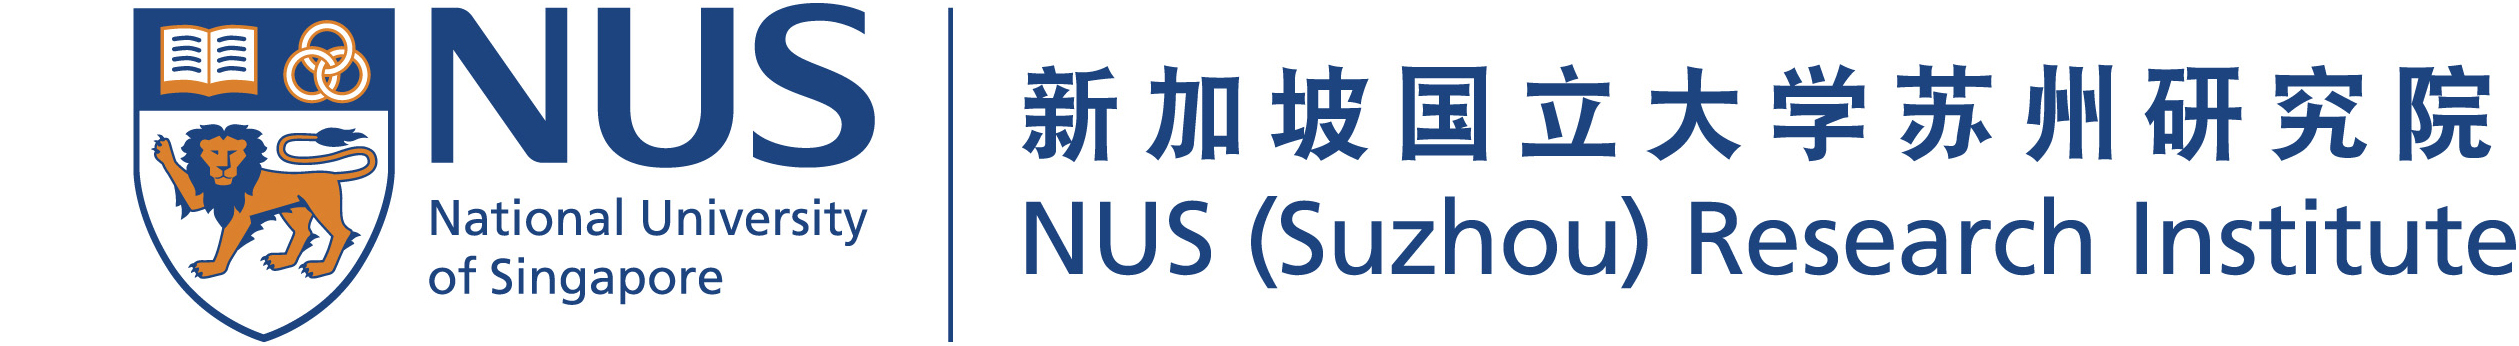 logo-nus-suzhou-ri